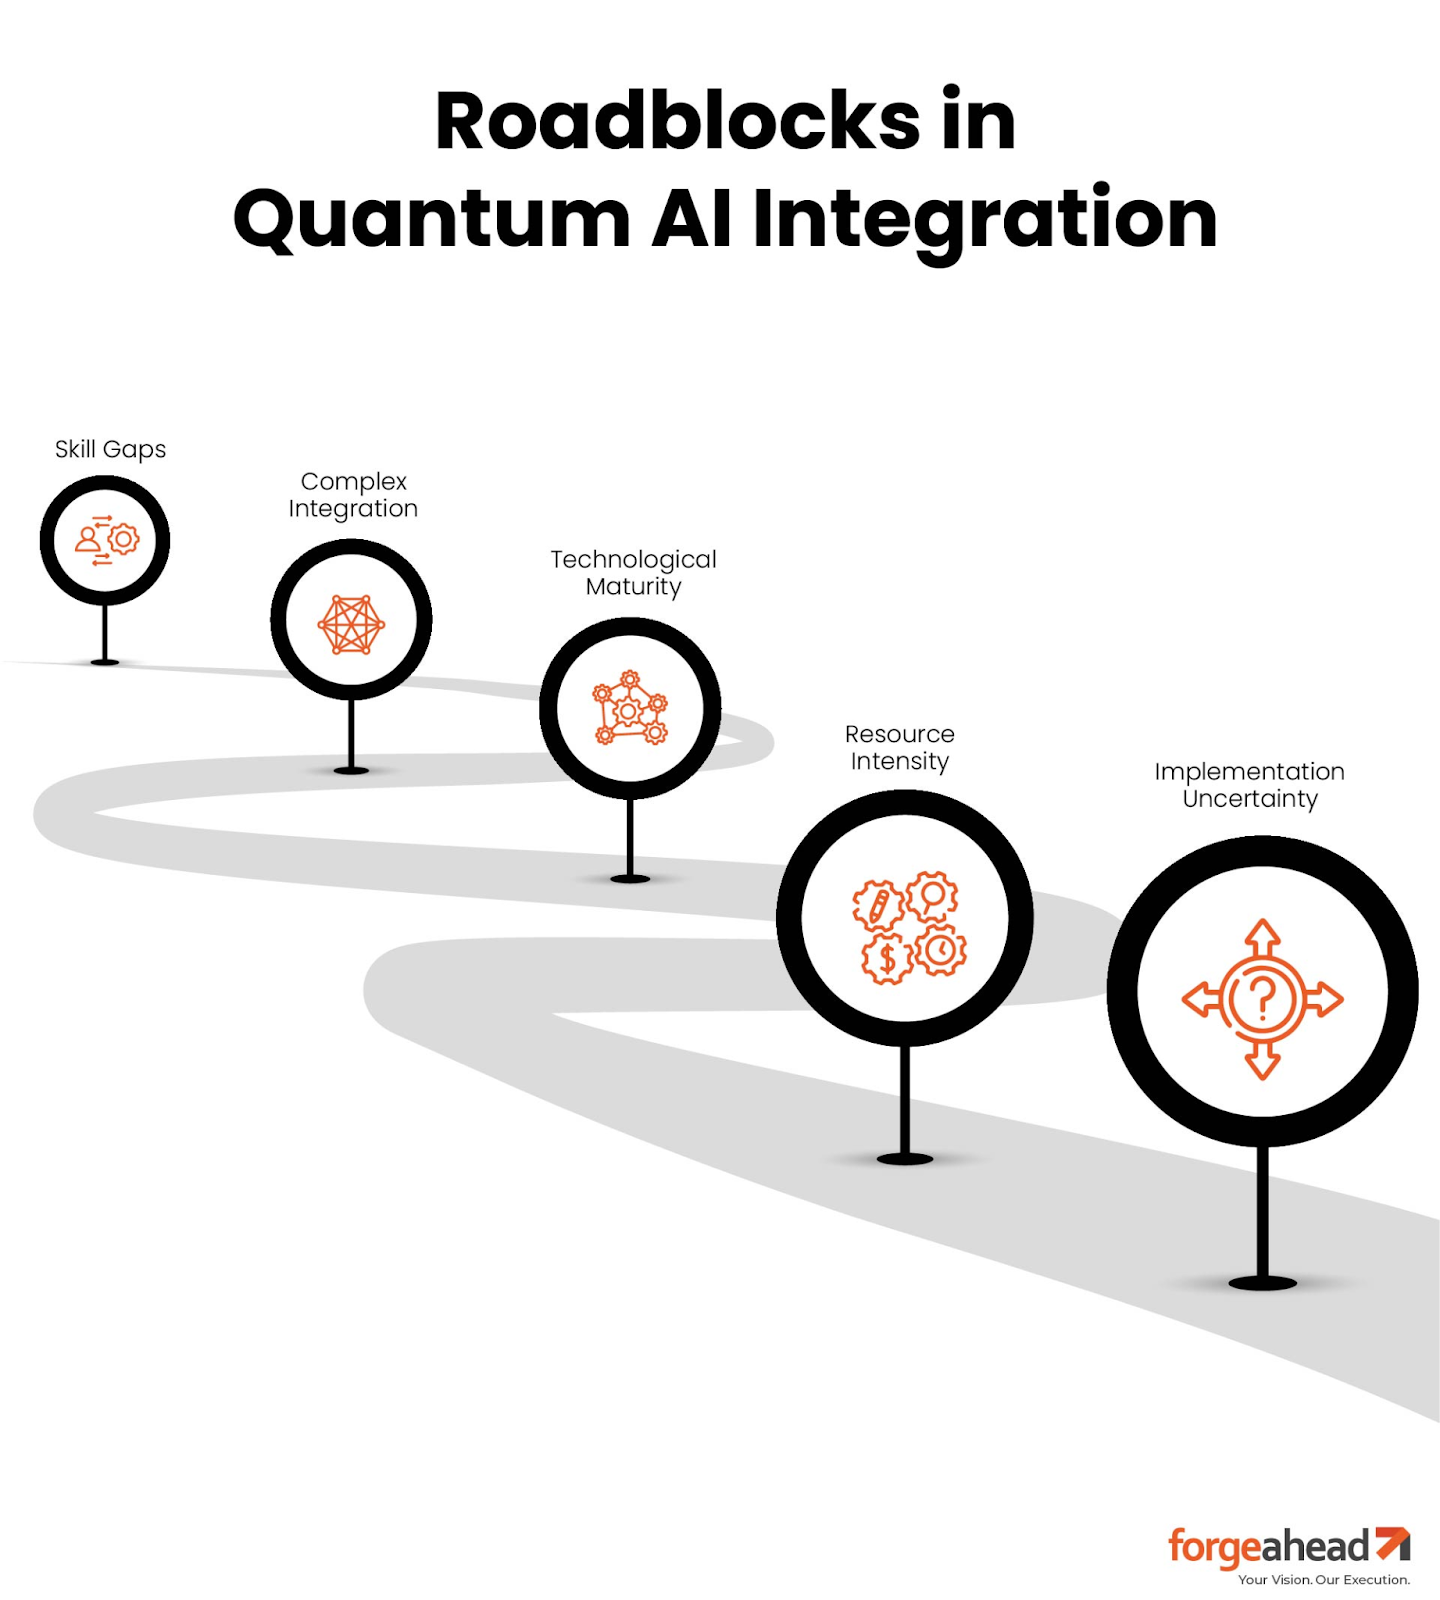 Roadblocks in Quantum AI Integration